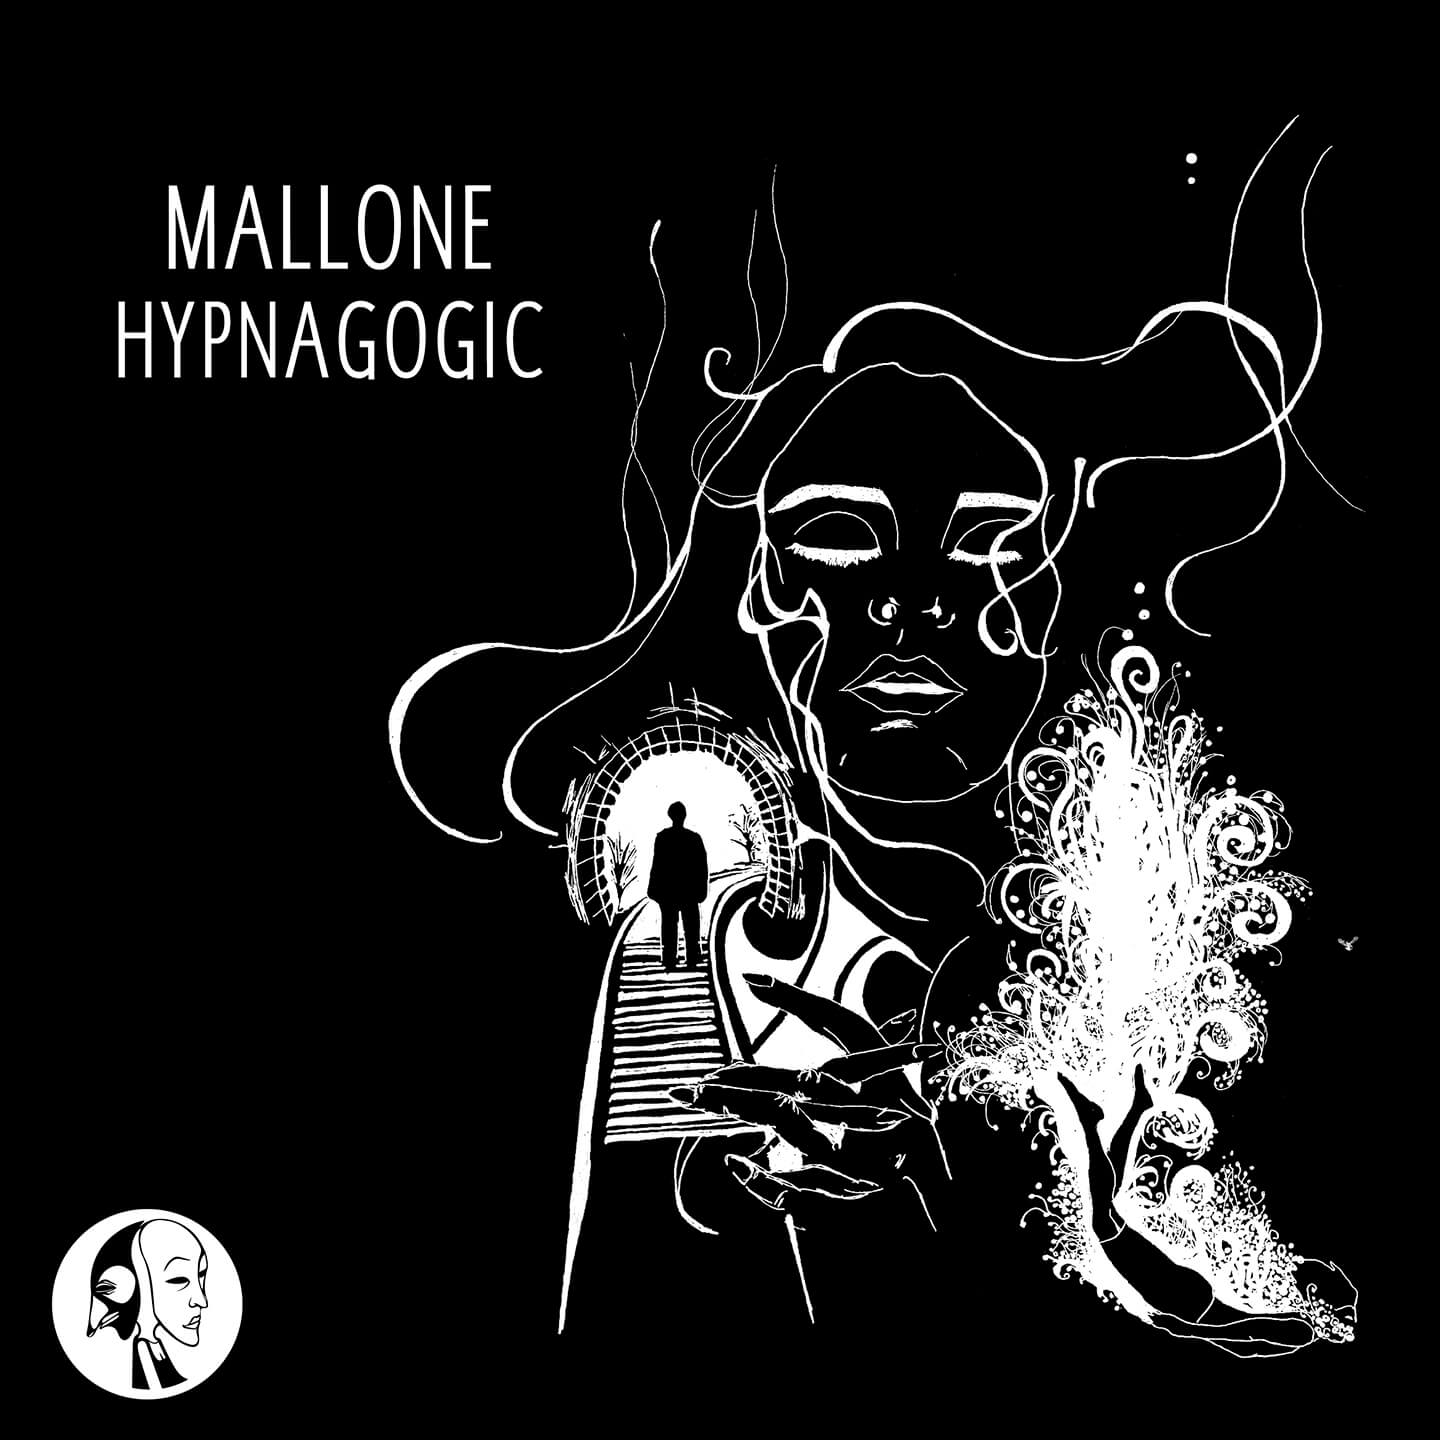 SYYKBLK010 - Steyoyoke Black - Mallone - Hypnagogic